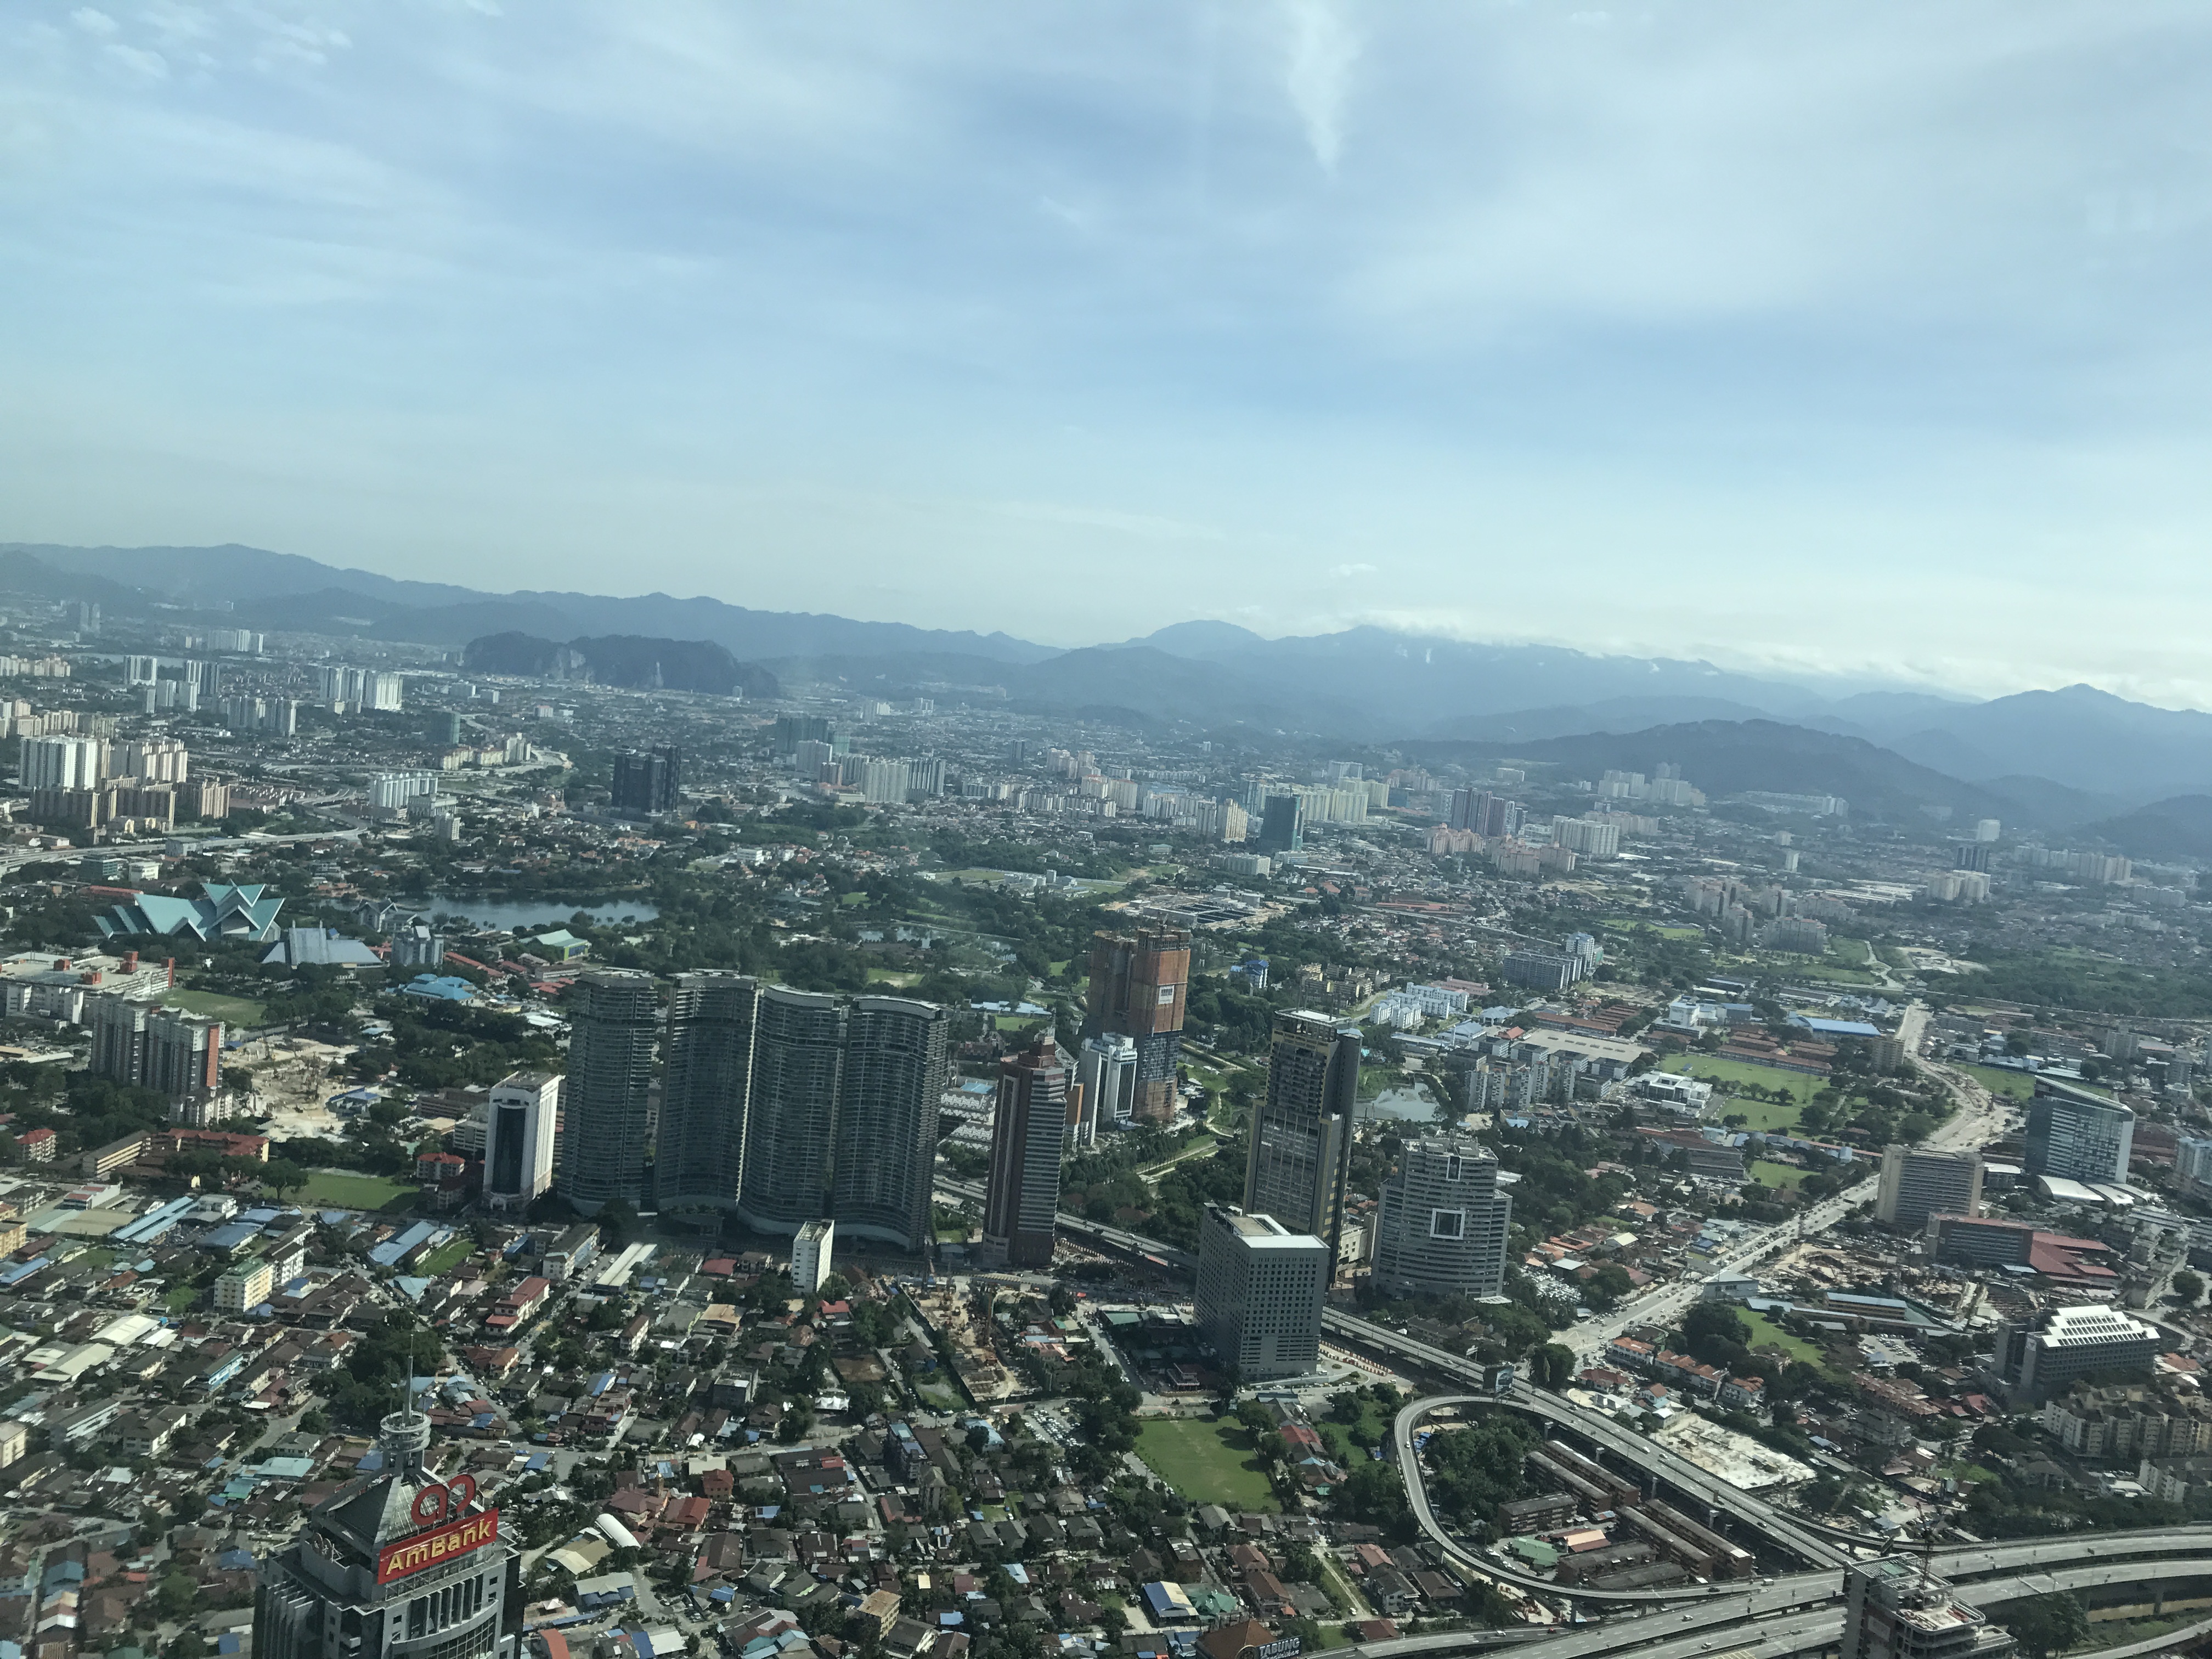 Kuala Lumpur landscape, May 2017